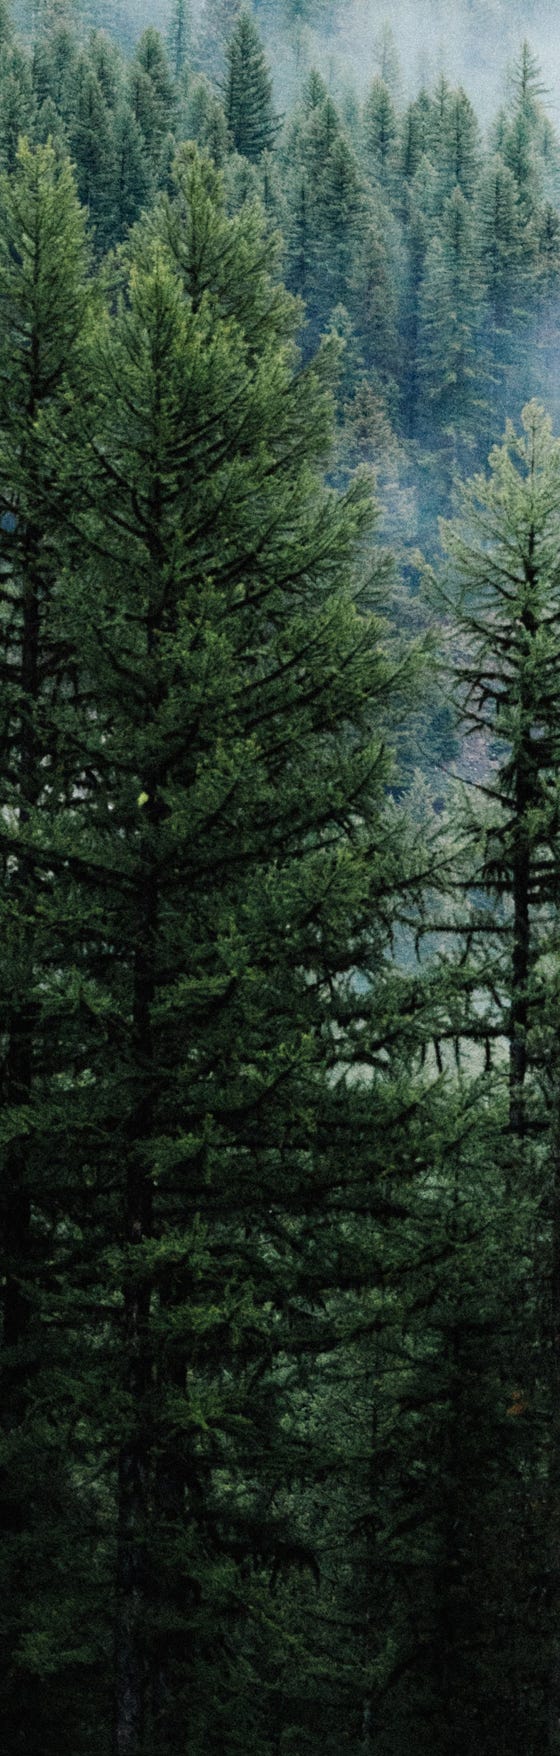 mountain pine trees